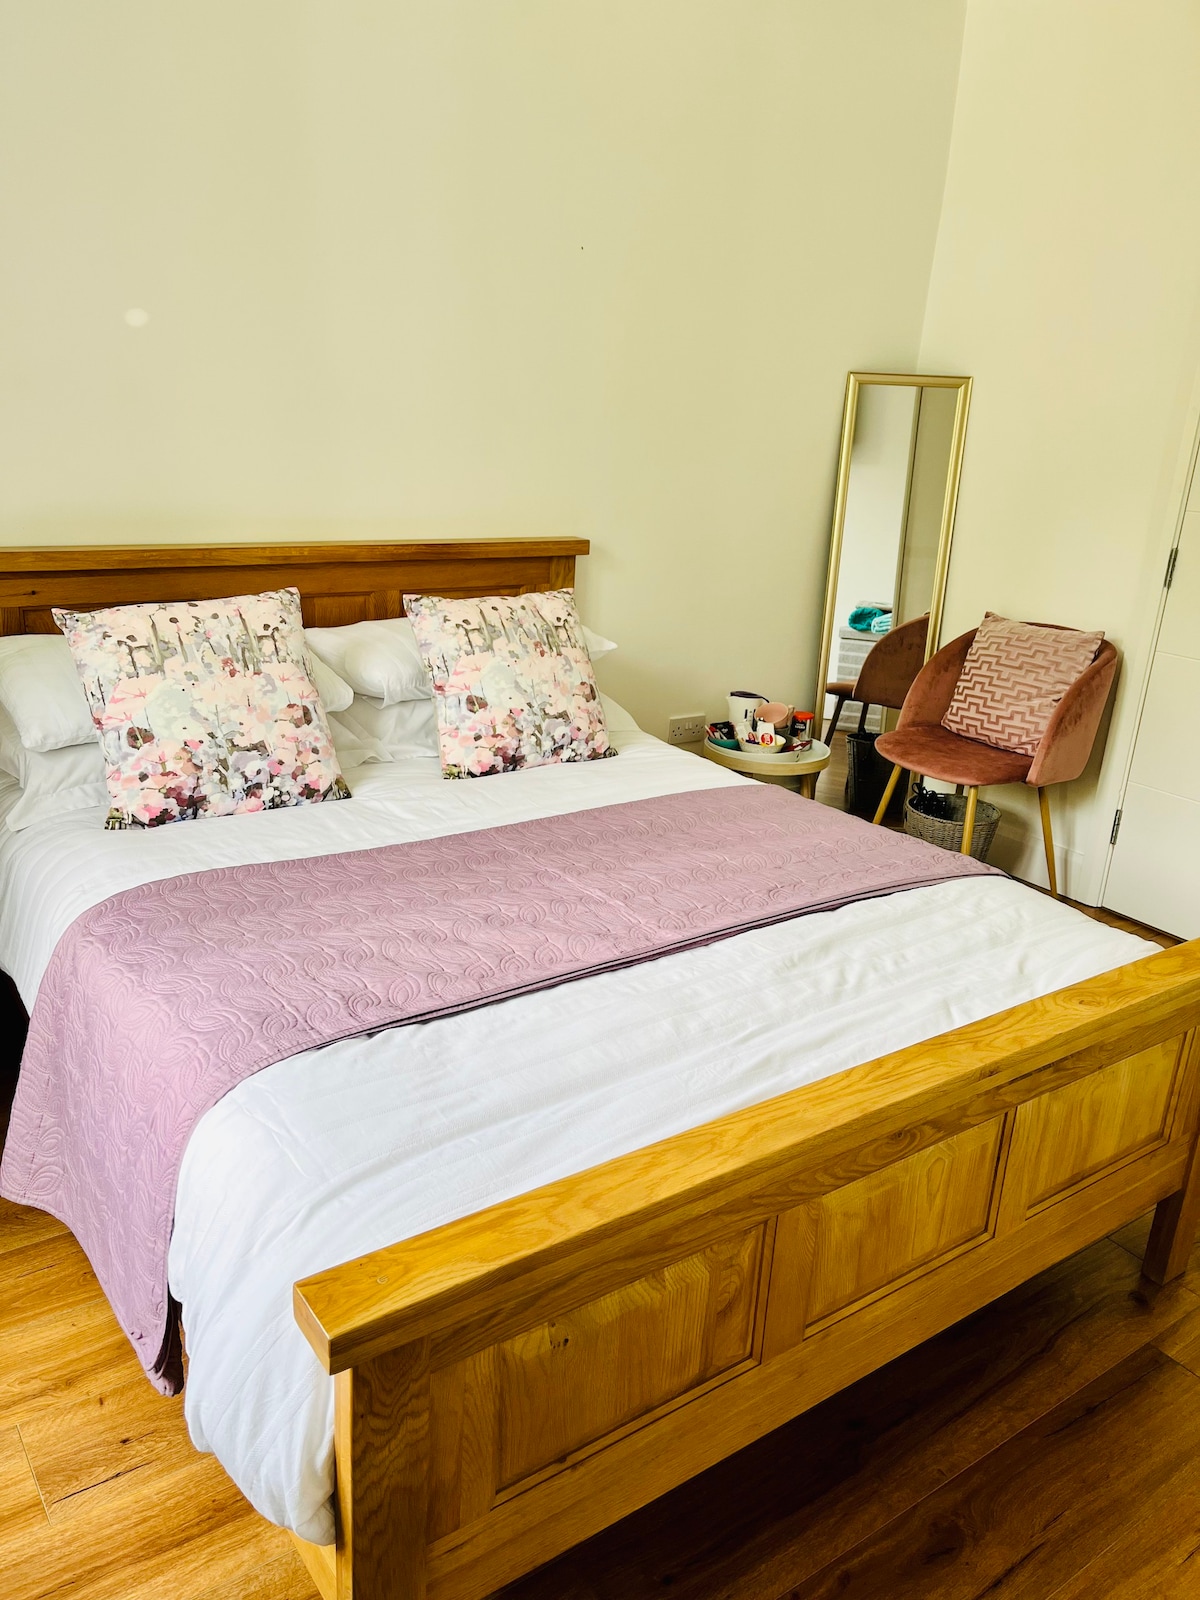 装修过的套房双人床卧室，位于乡村风格的房源内